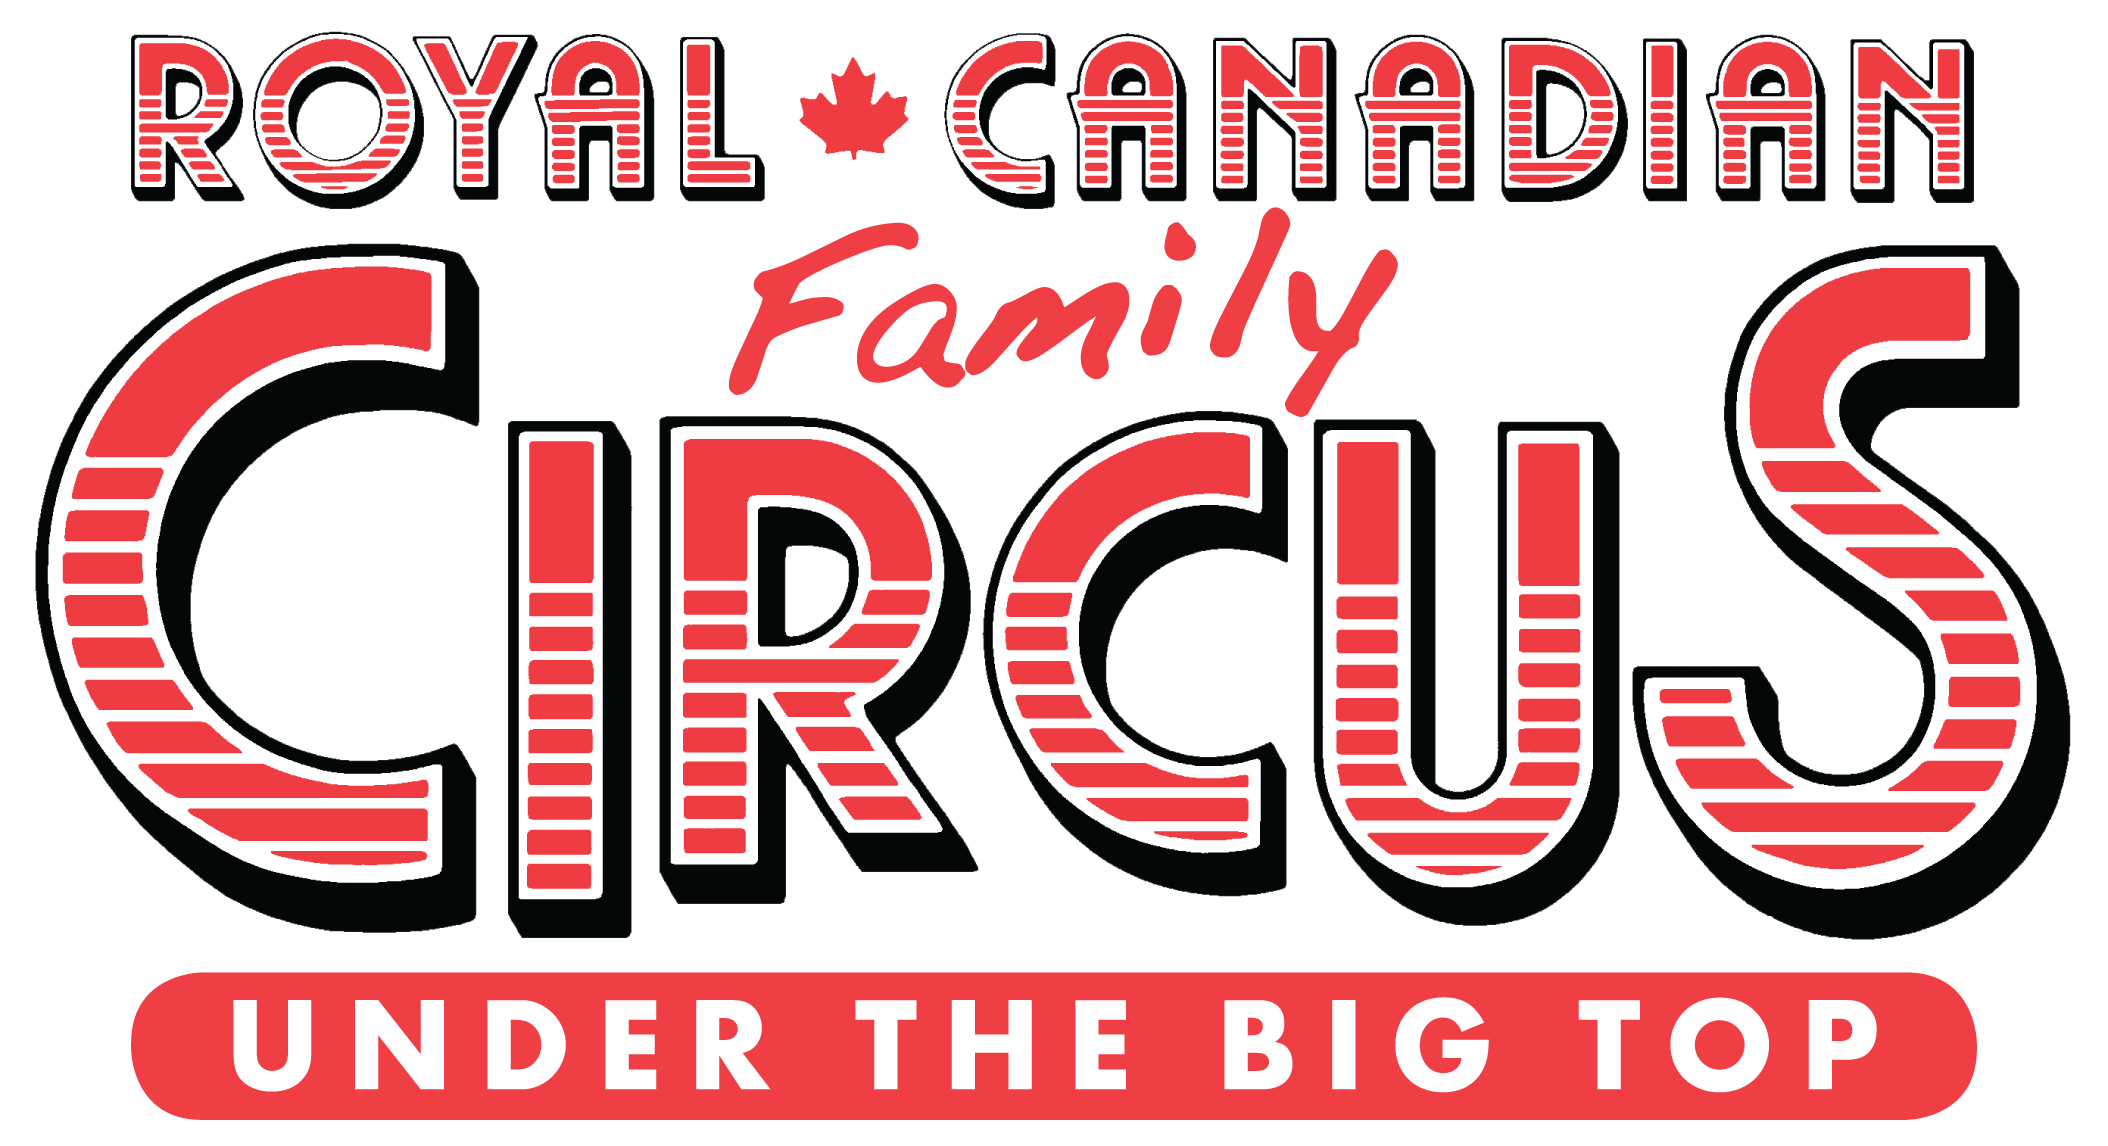 Circus Logo - Royal Canadian Circus Logo - 660 NEWS